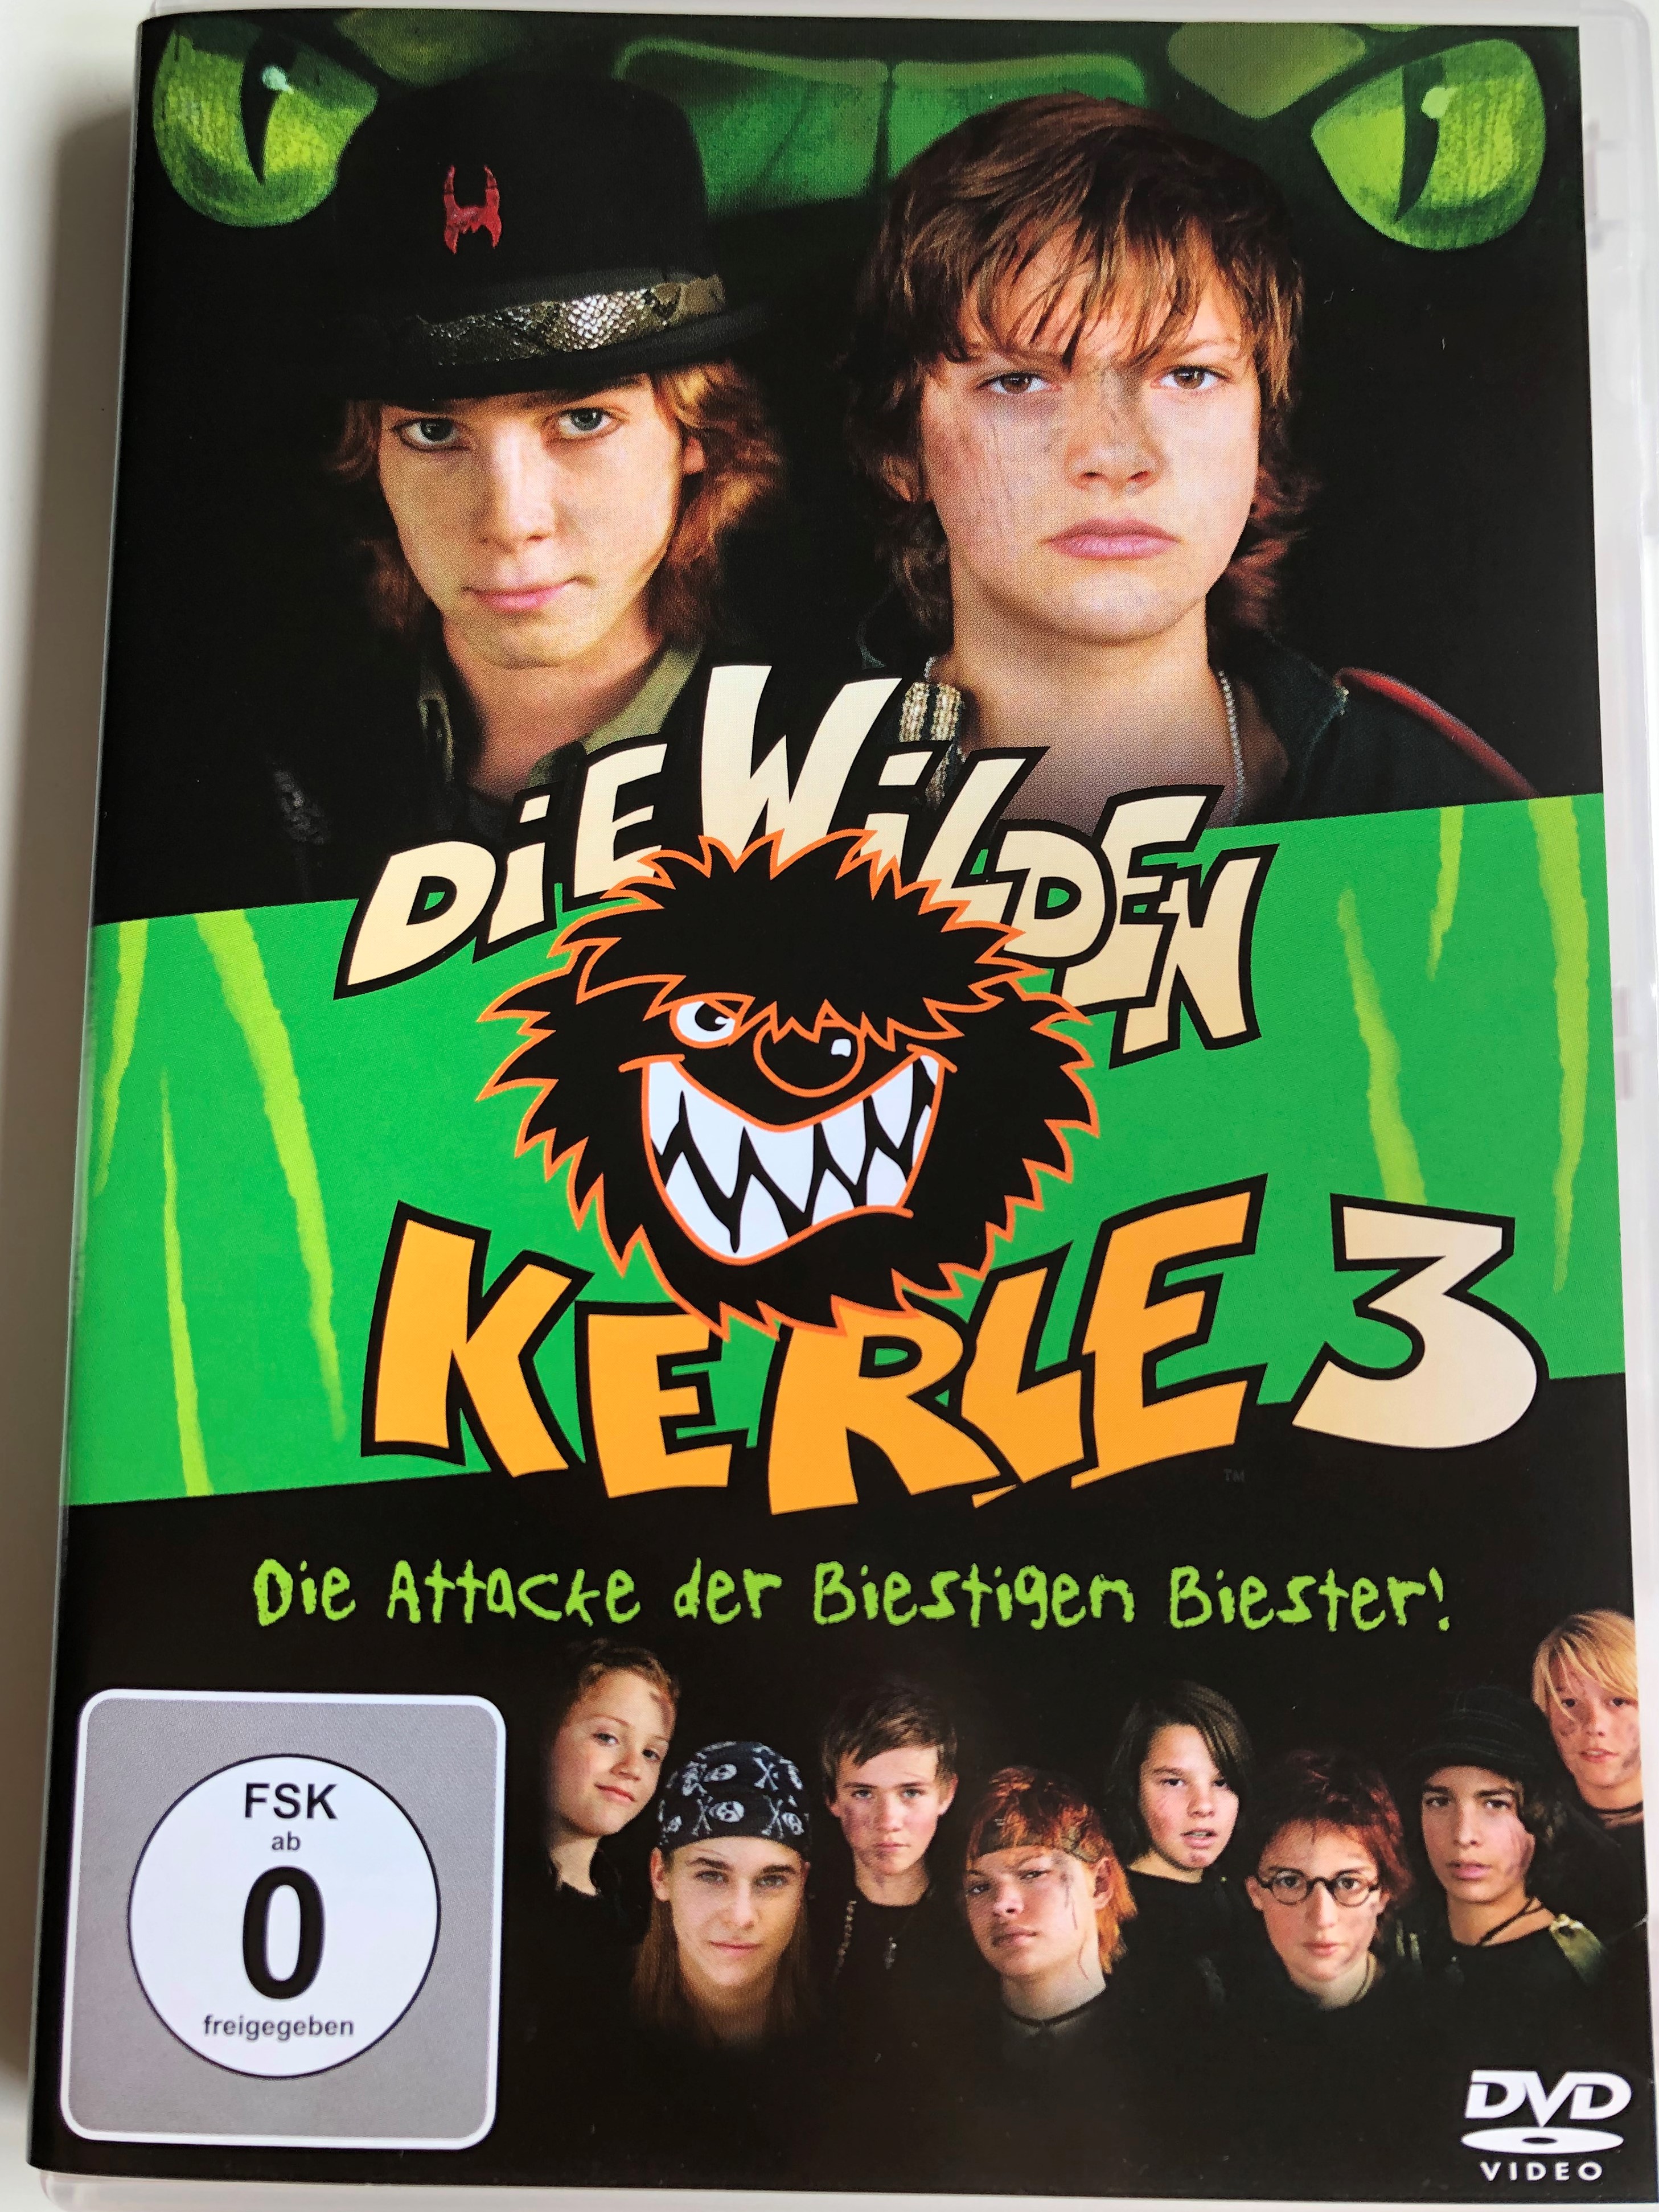 die-wilden-kerle-3-dvd-2003-die-attacke-der-biestigen-biester-1.jpg